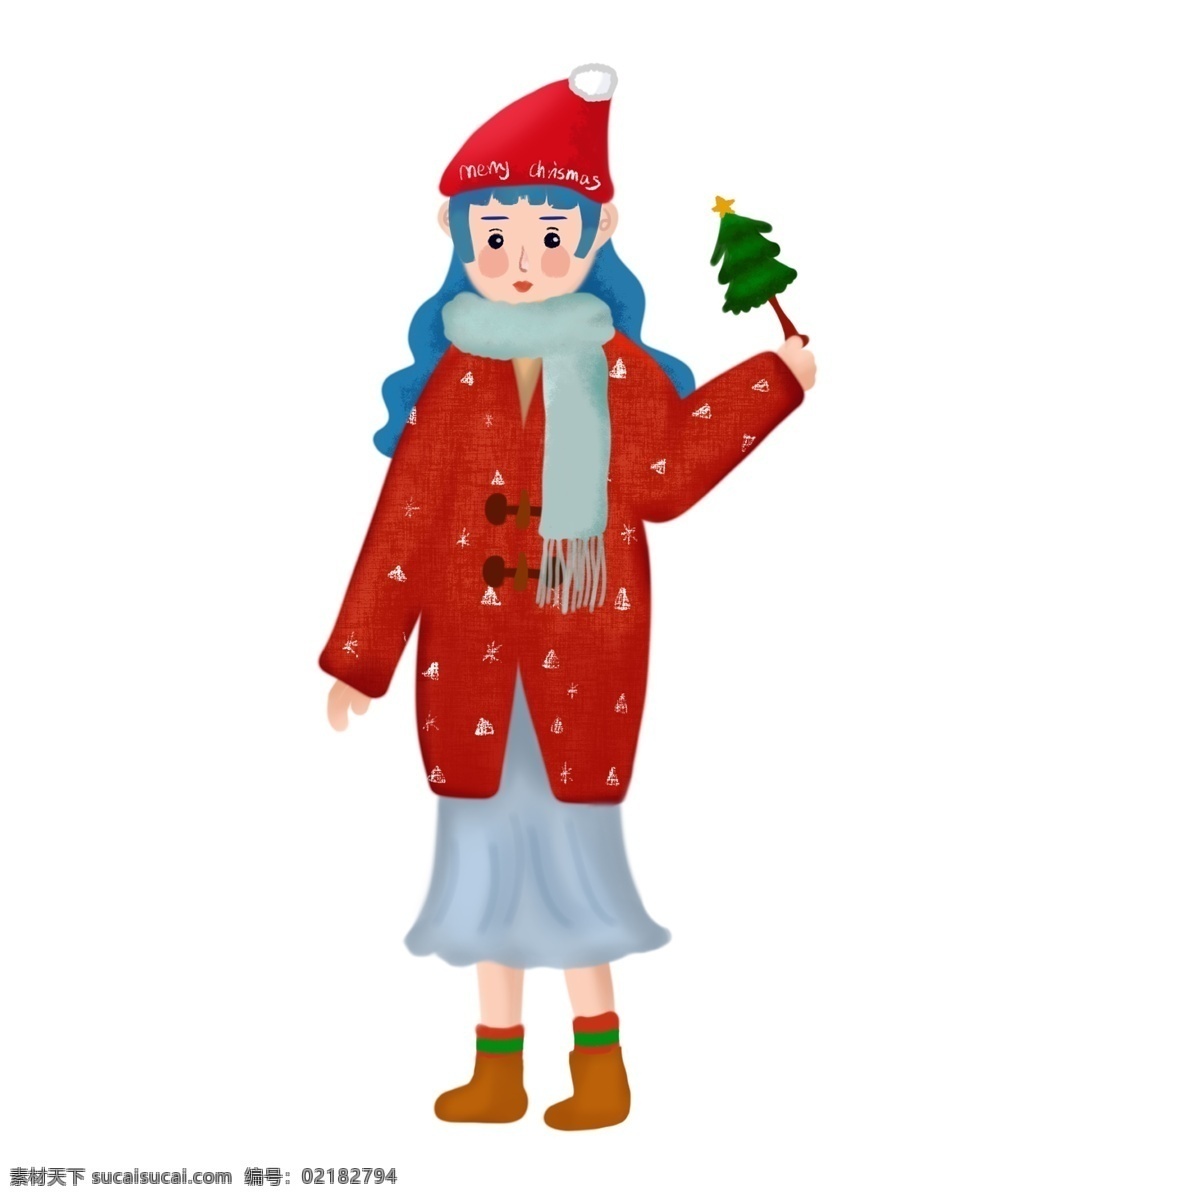 圣诞节 戴 圣诞 帽 女孩 手绘 插画 图 封面 圣诞节女孩 冬季 商业 app界面 ui ps